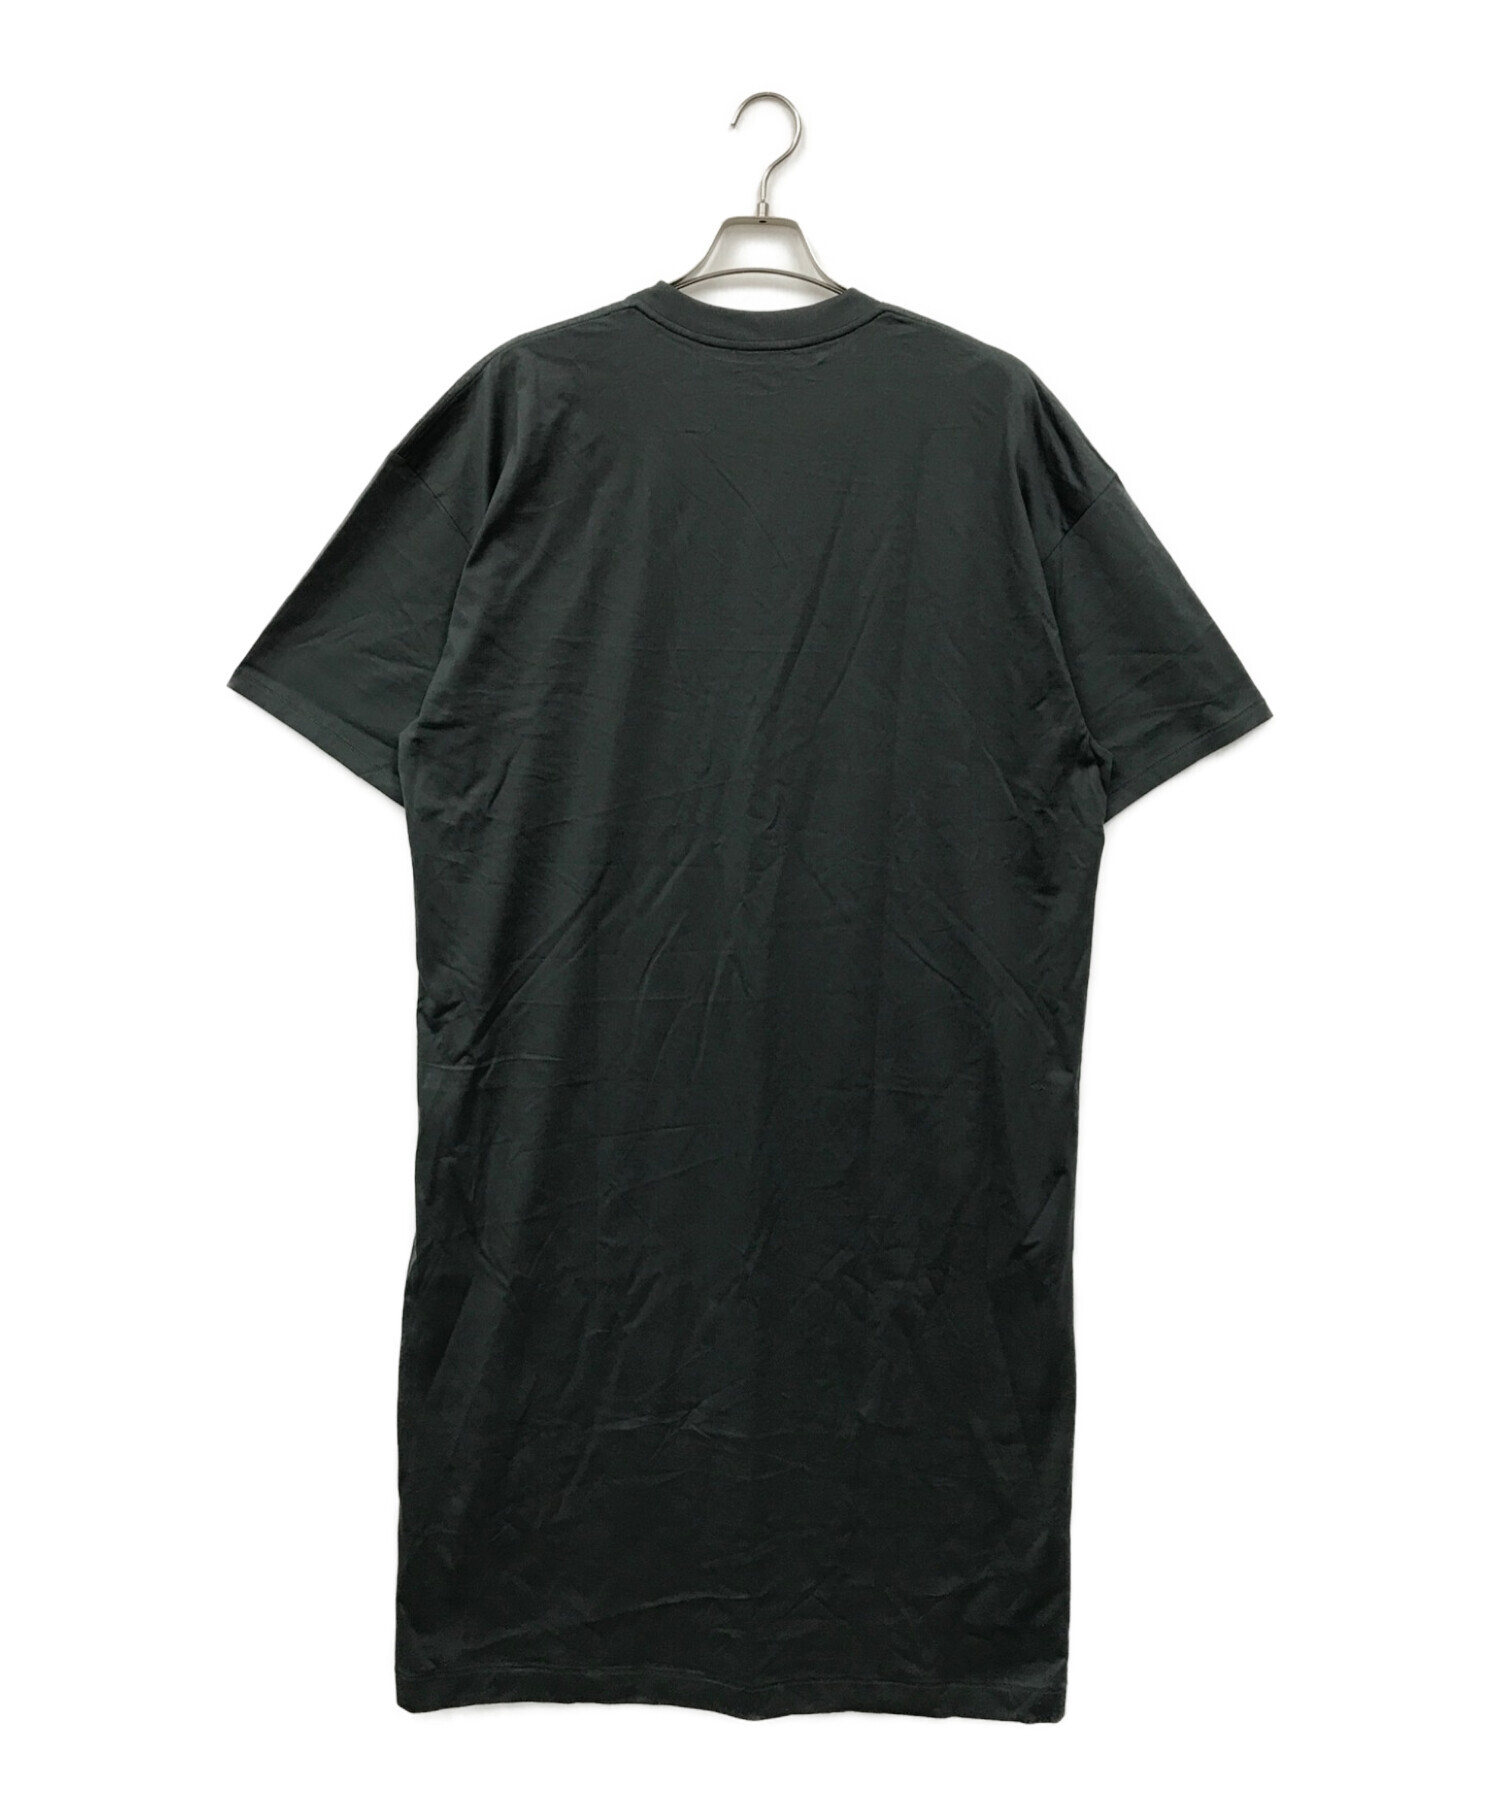 ATON (エイトン) Tシャツワンピース グリーン サイズ:2 未使用品